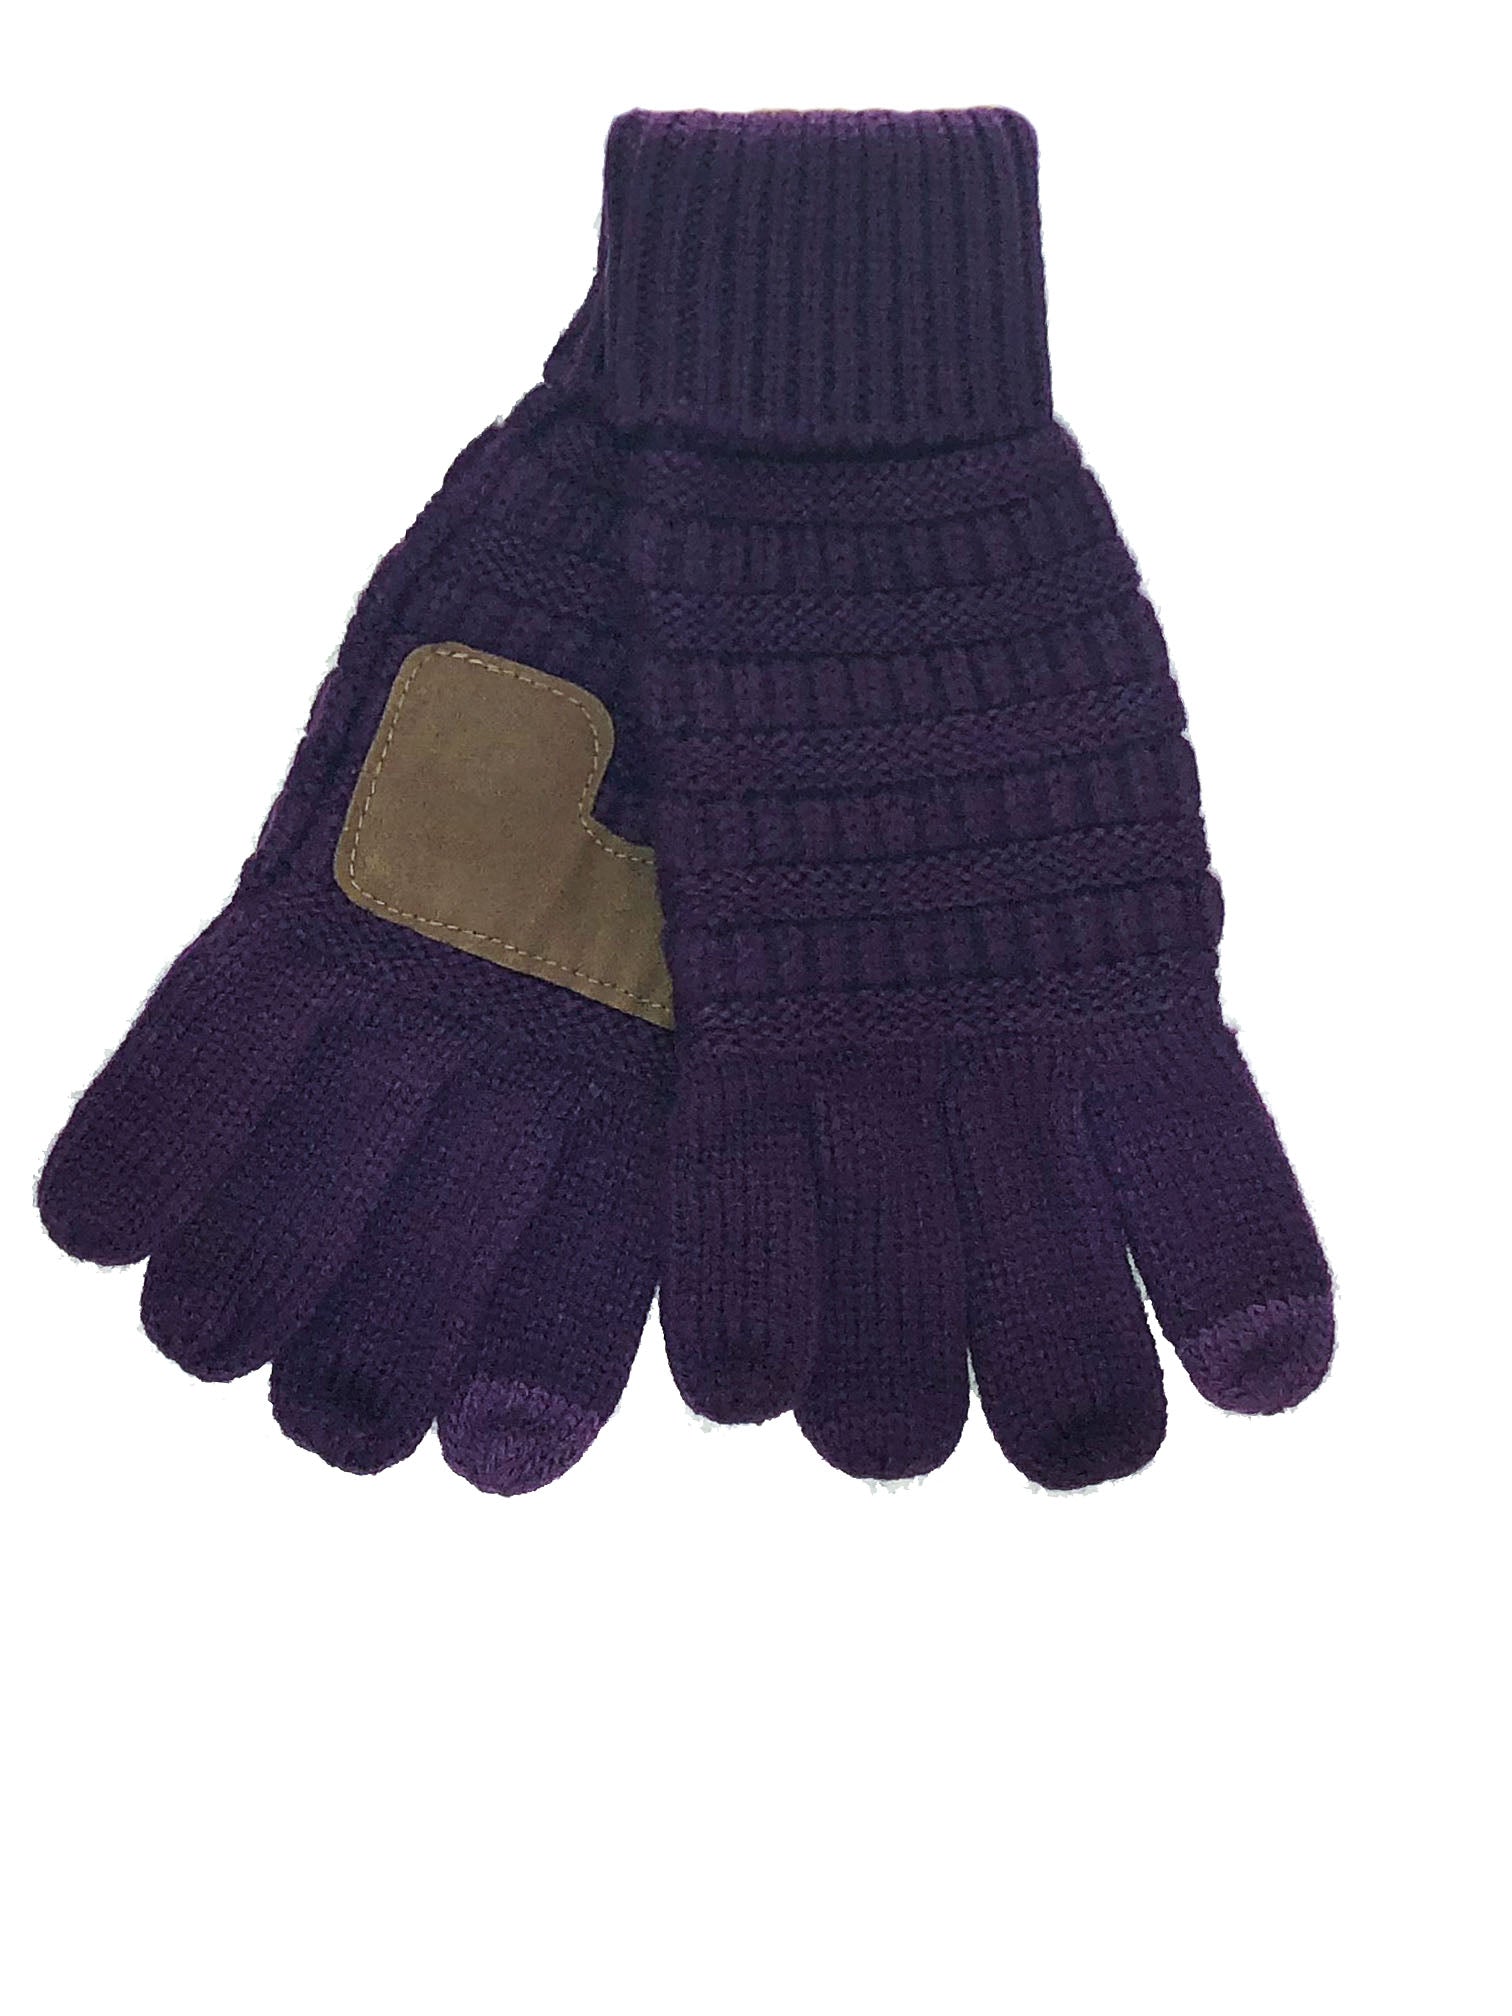 G-20 C.C Dark Purple Gloves